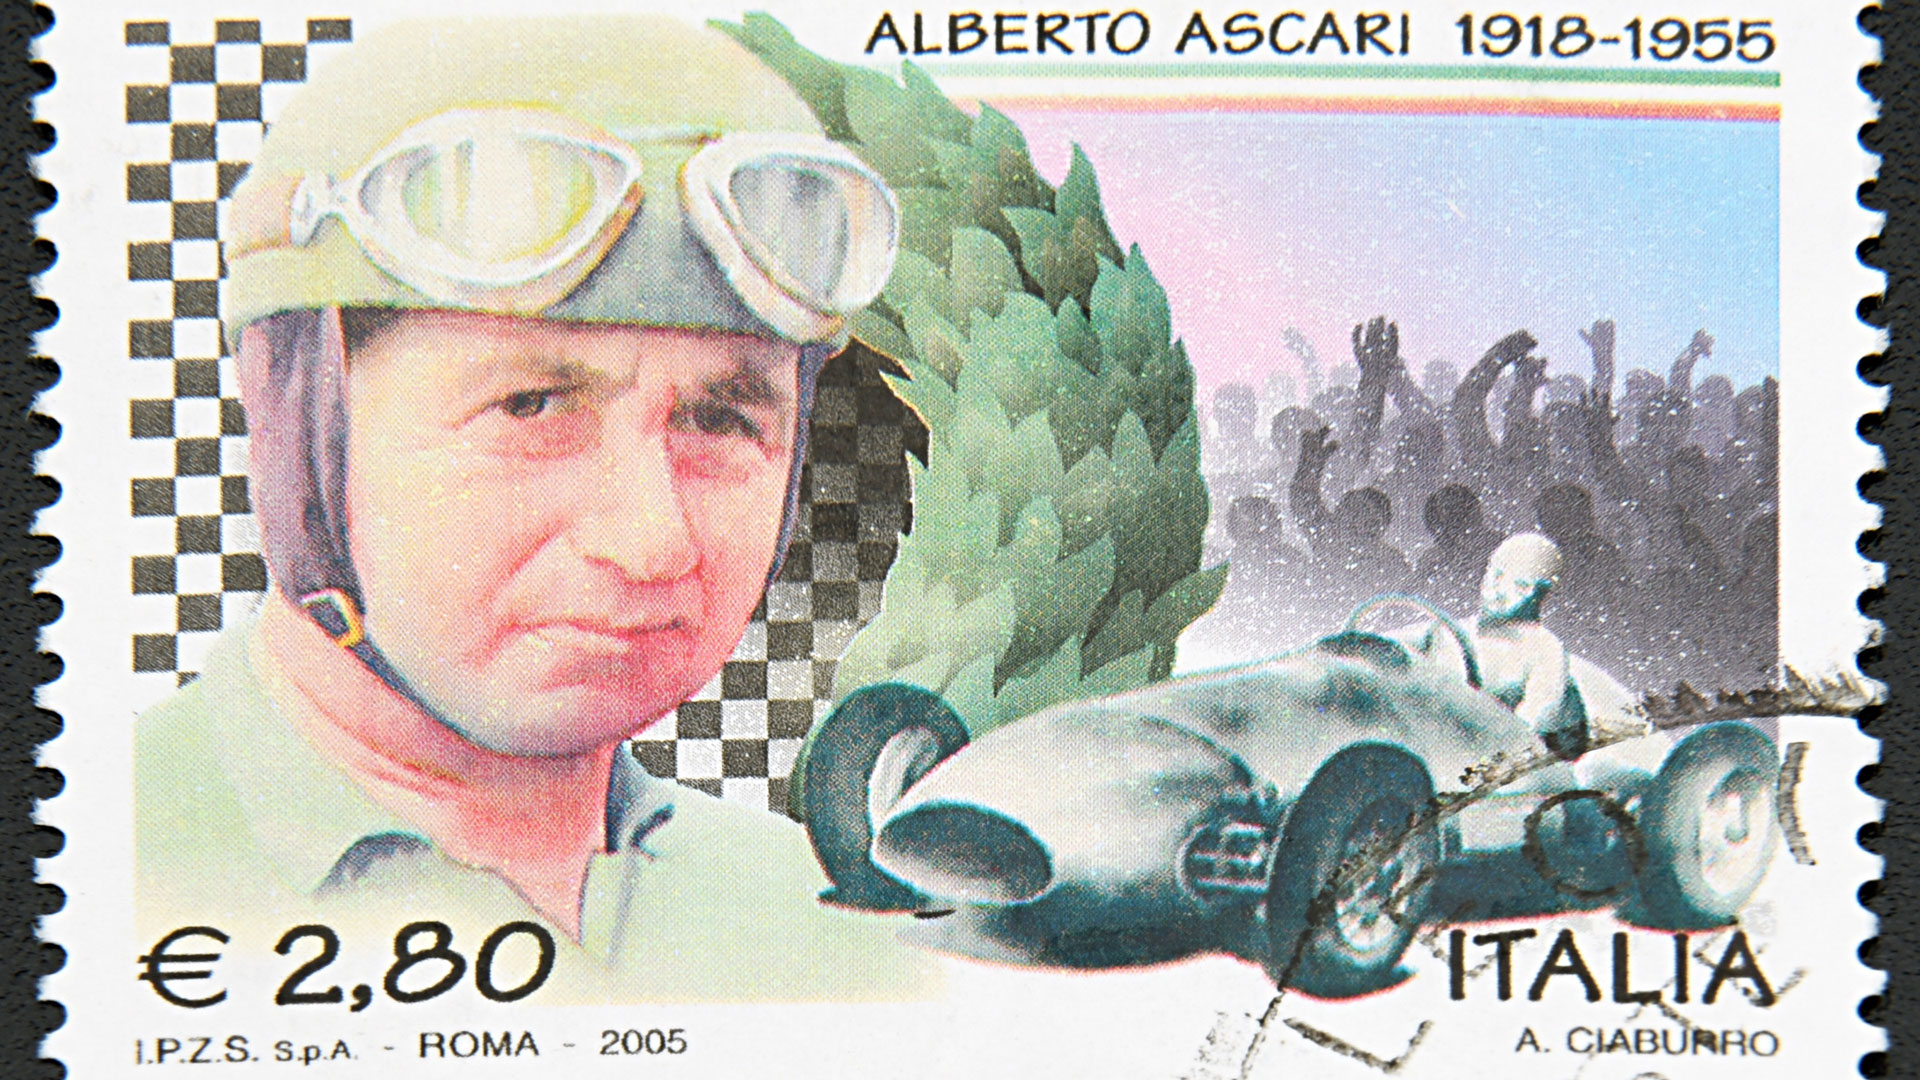 Antonio and Alberto Ascari